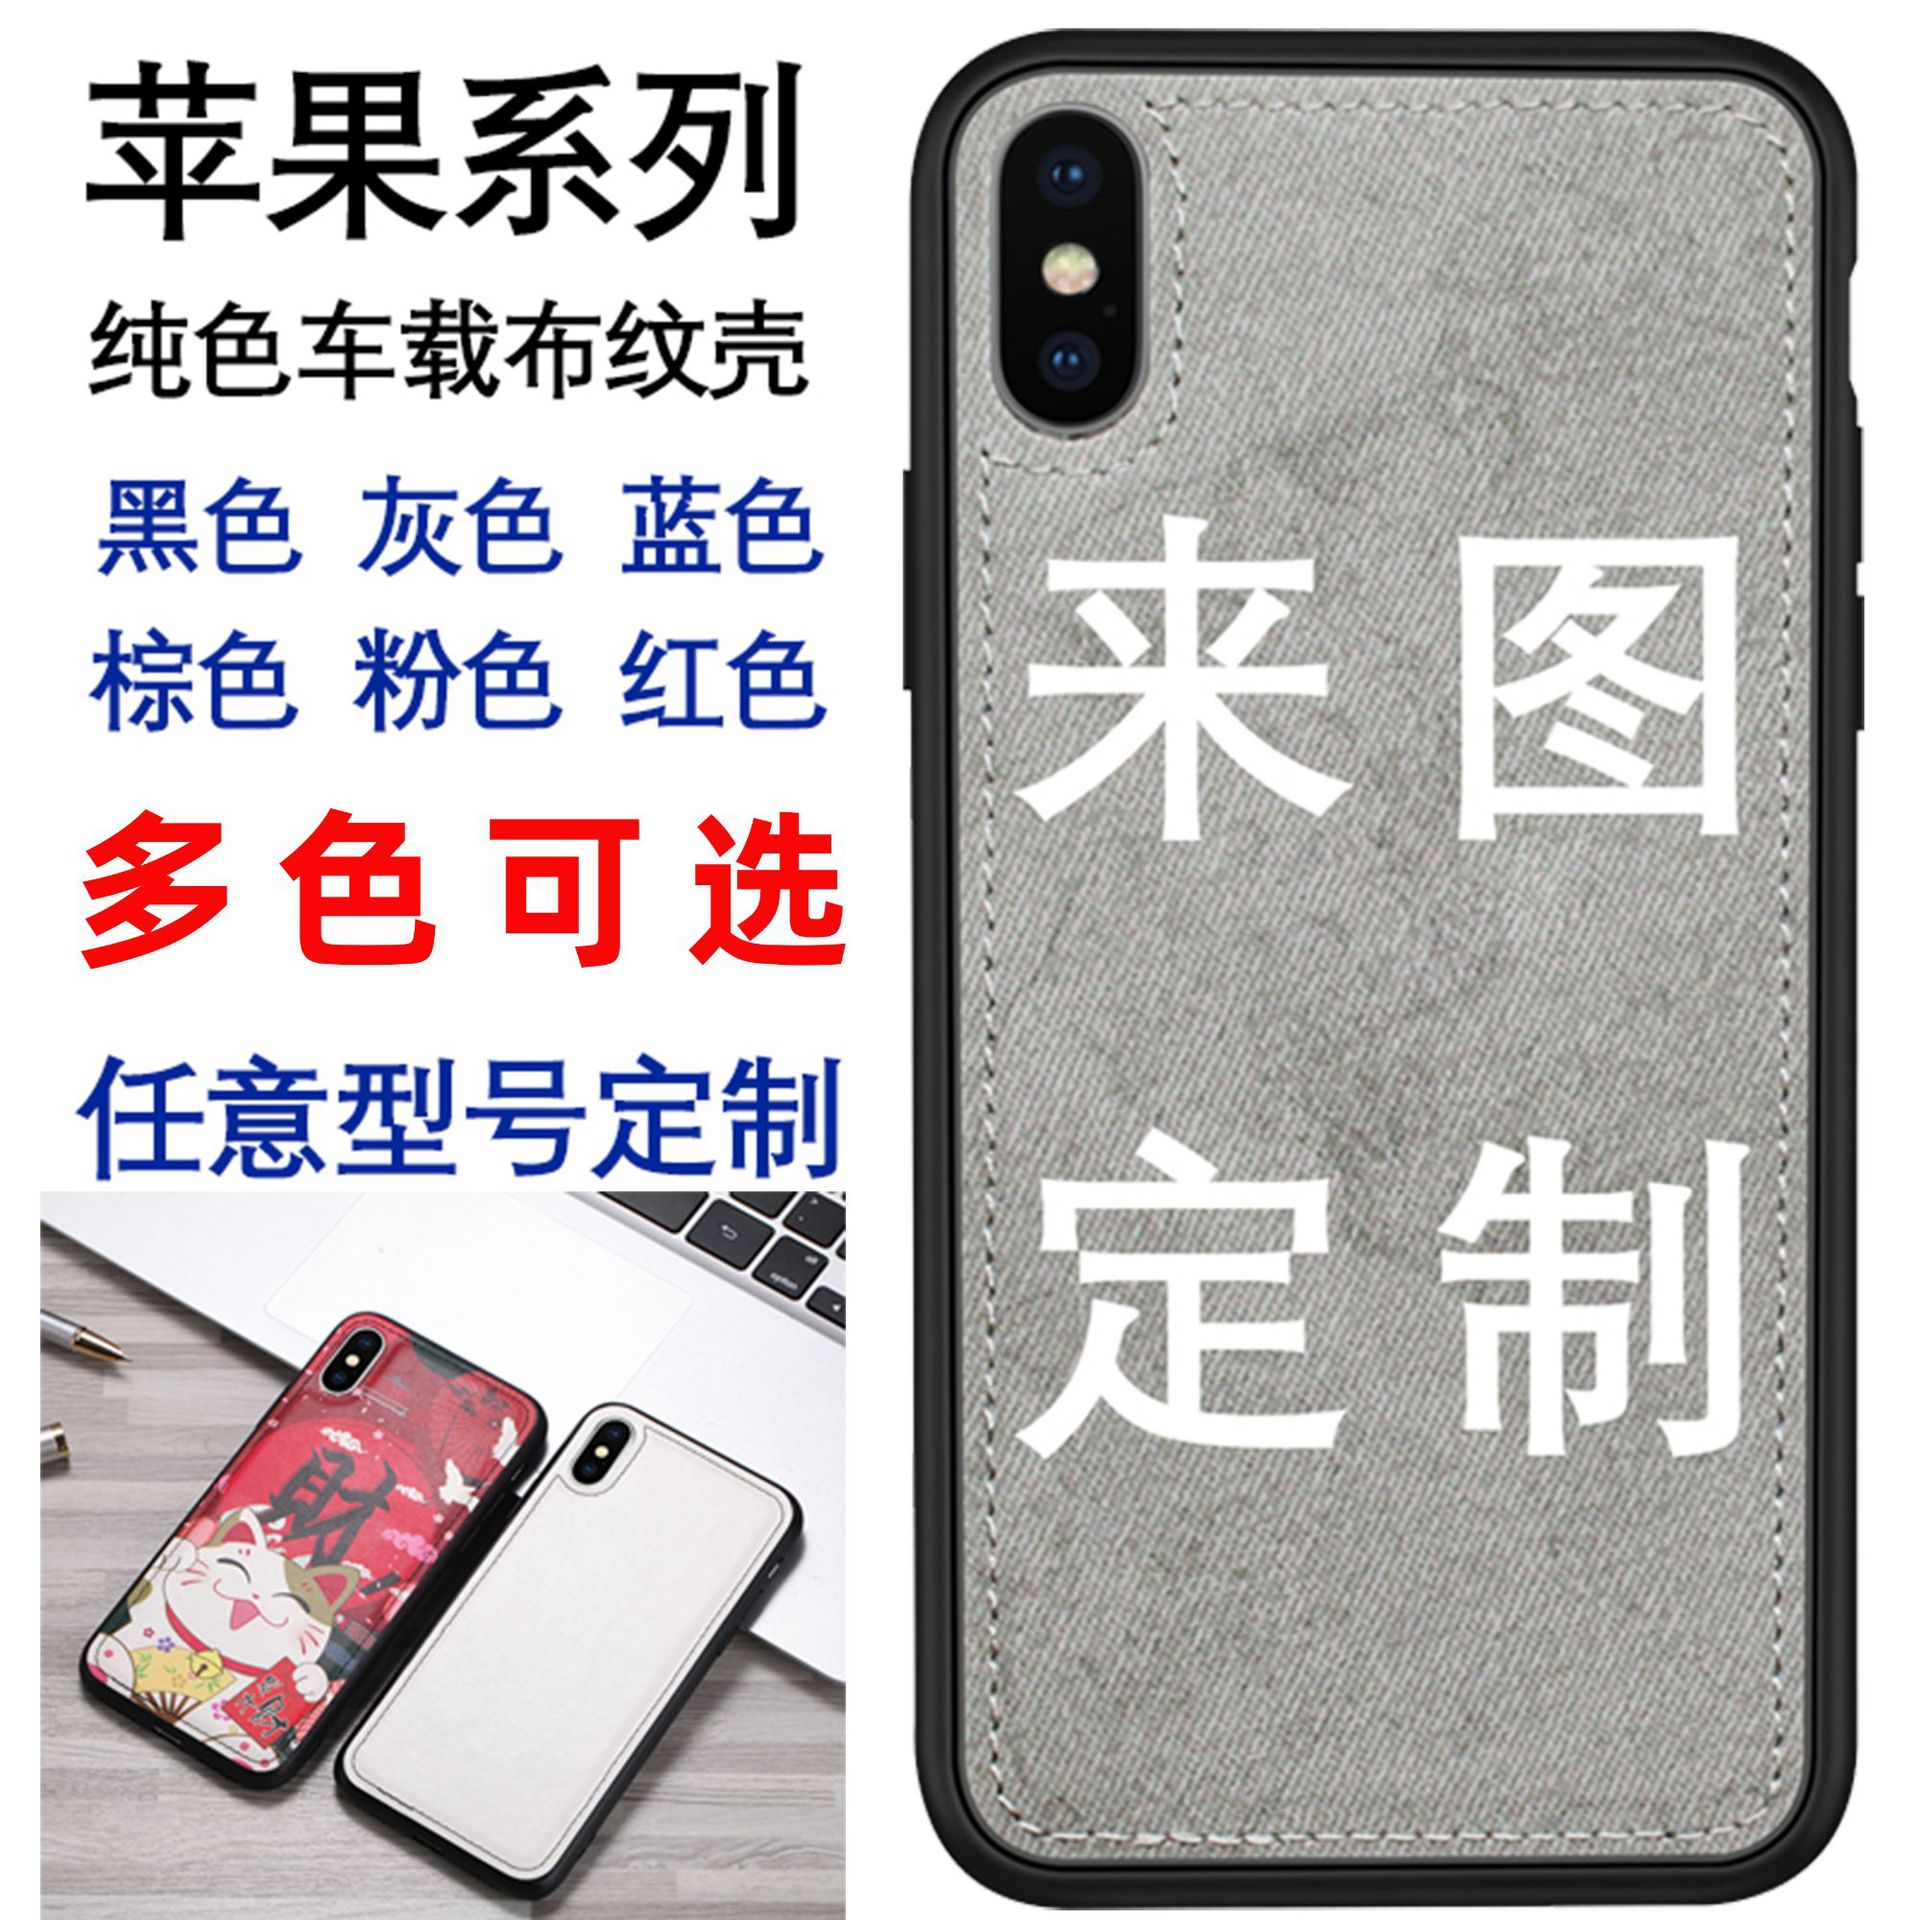 来图定zhi适用于苹果三星vivo华为oppo小米红米一加手机保护套